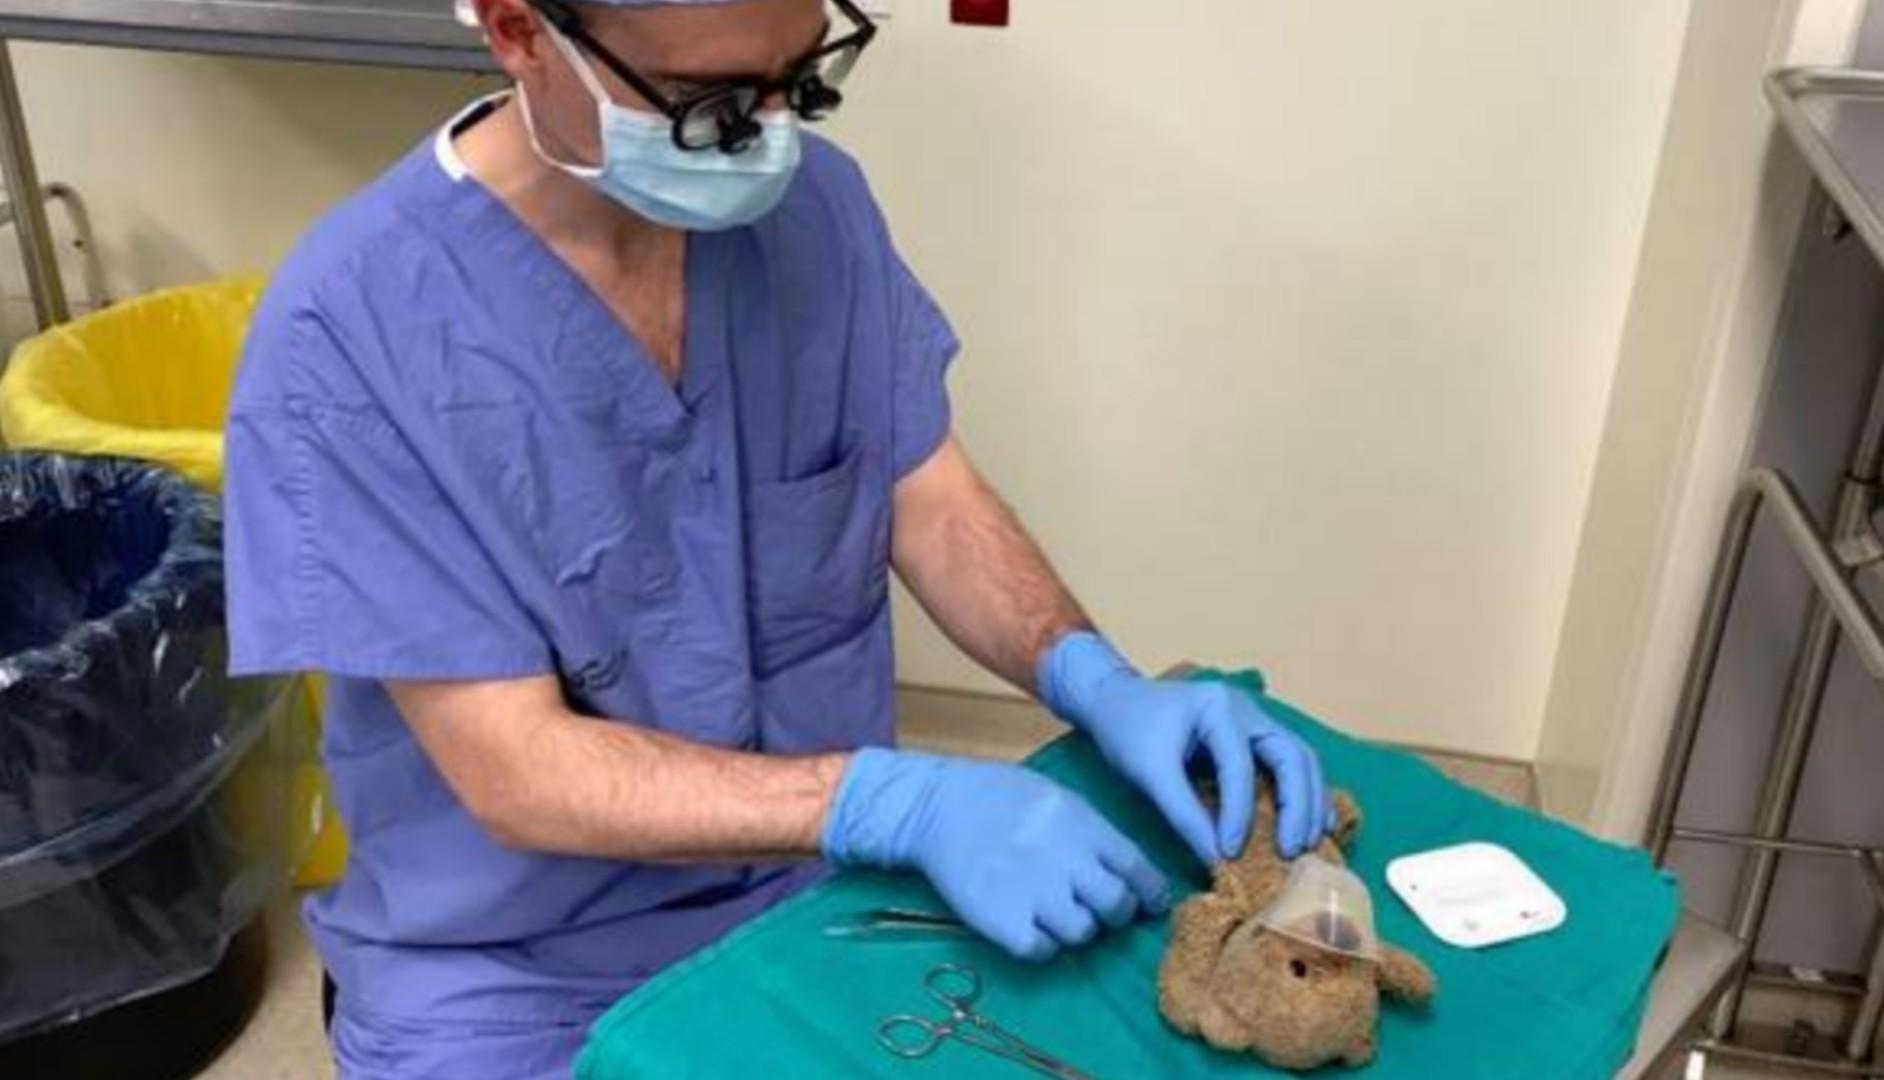 Il chirurgo opera l’orsetto del bambino che si deve operare: Me l’ha chiesto lui, come potevo dire no